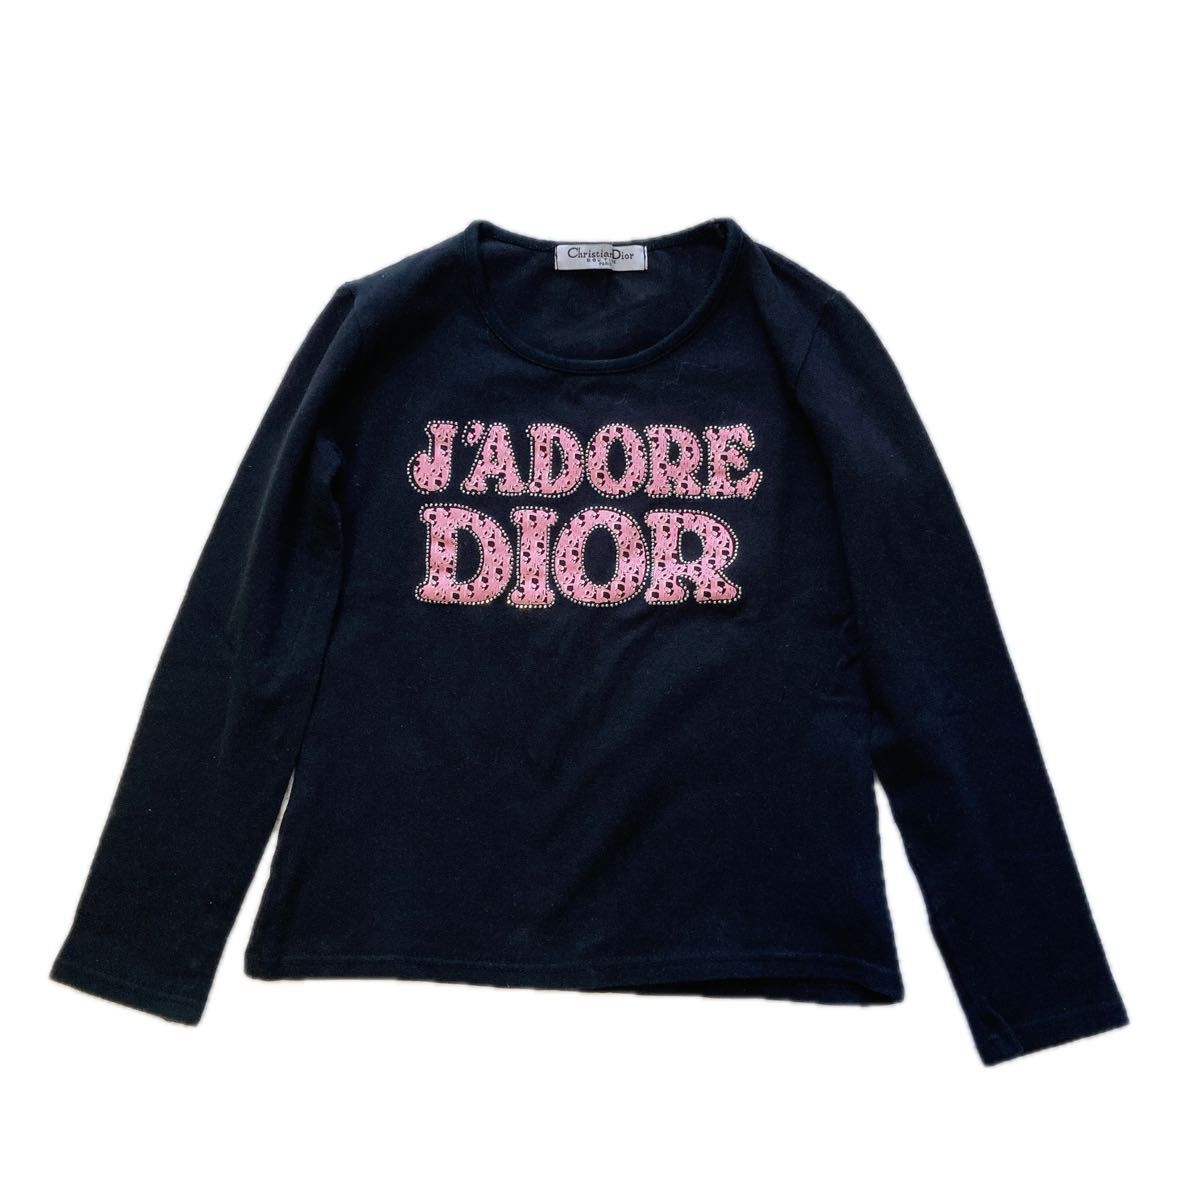 【美品】Christian Diorディオール ジャドールロンT ラインストーン 長袖 ブラック